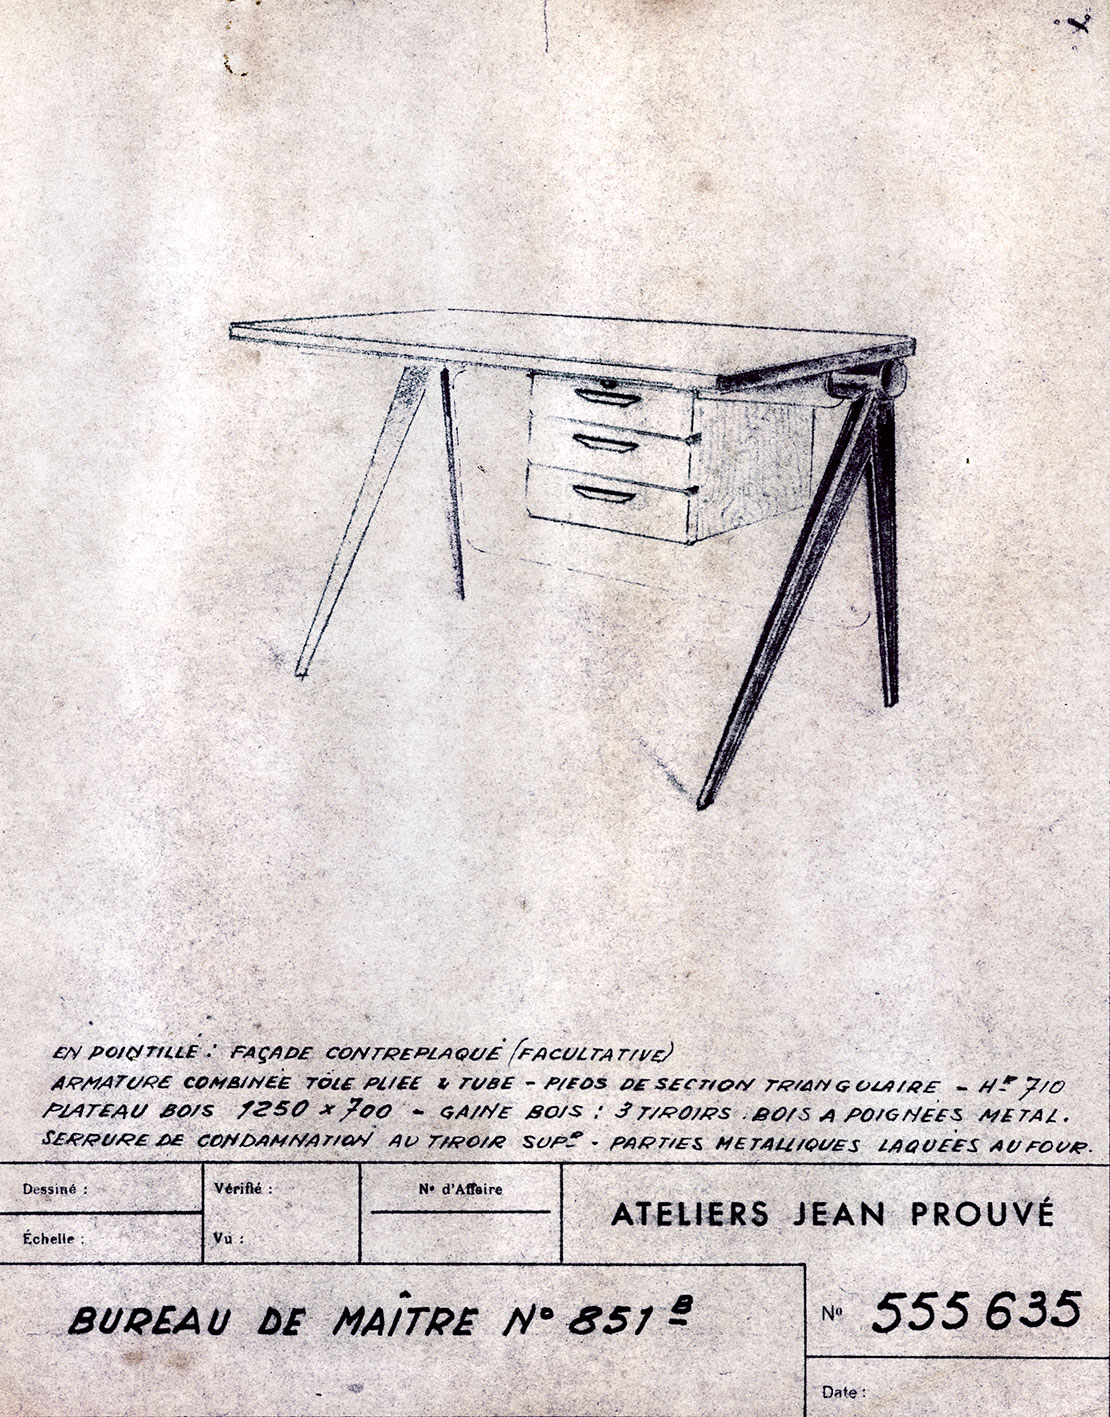 “Teacher’s Desk no. 851”. Ateliers Jean Prouvé descriptive sheet no. 555.635, January 1953.